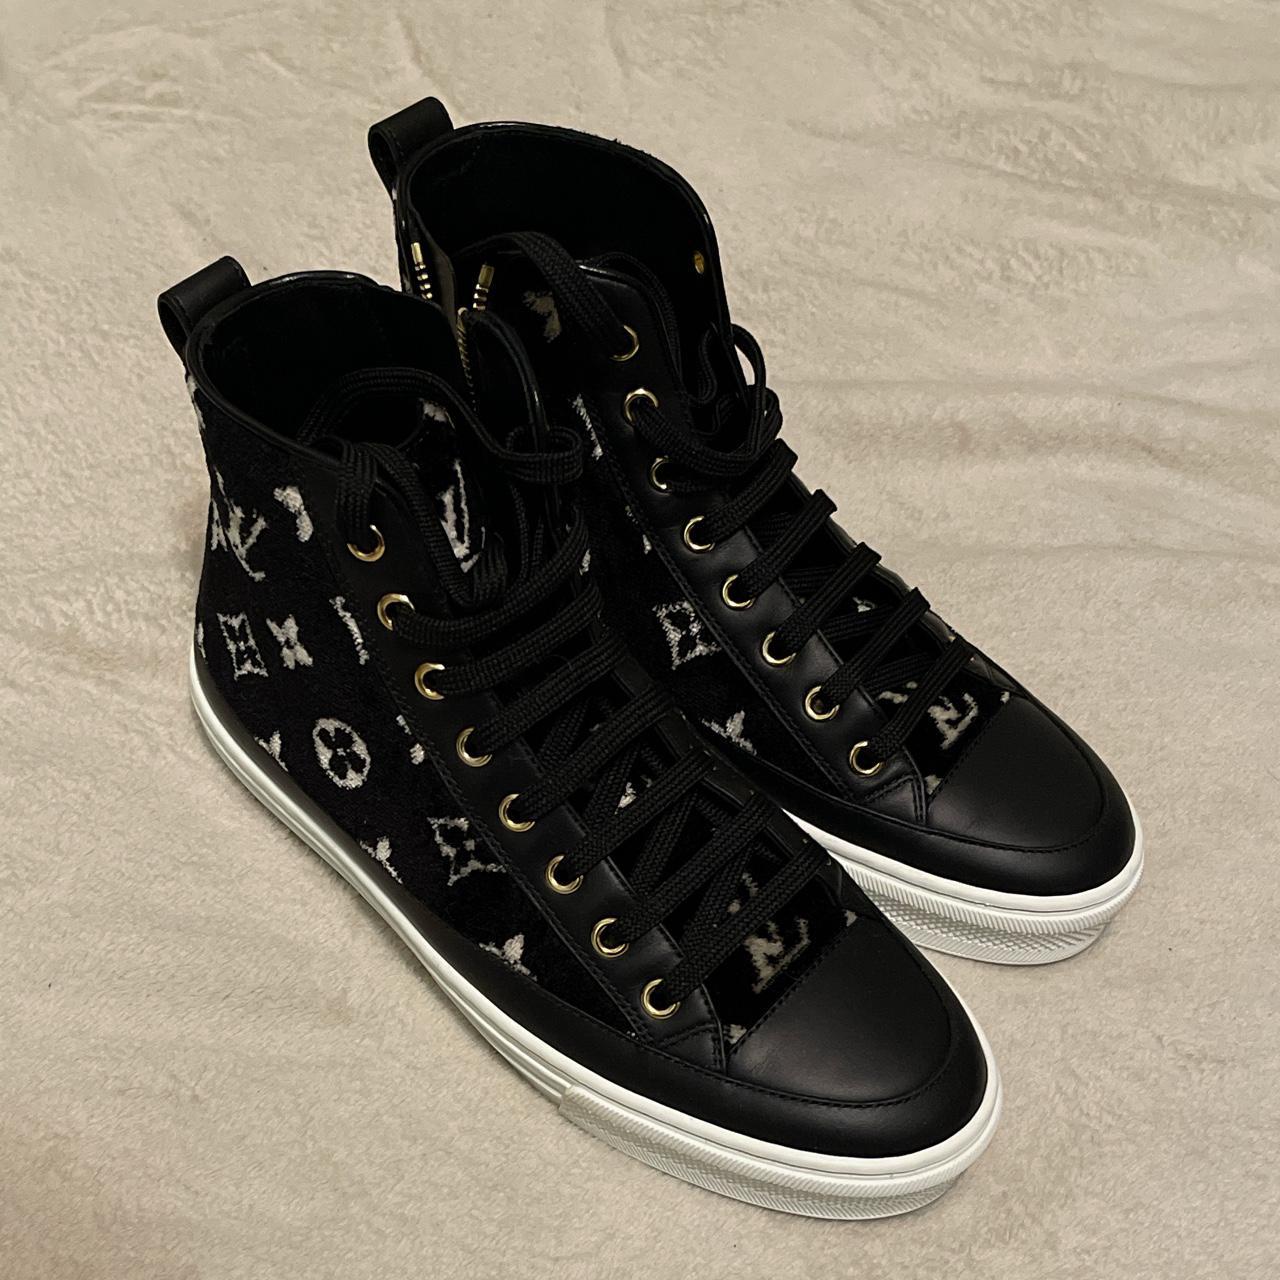 Louis Vuitton Stellar black sneaker boots, was a - Depop